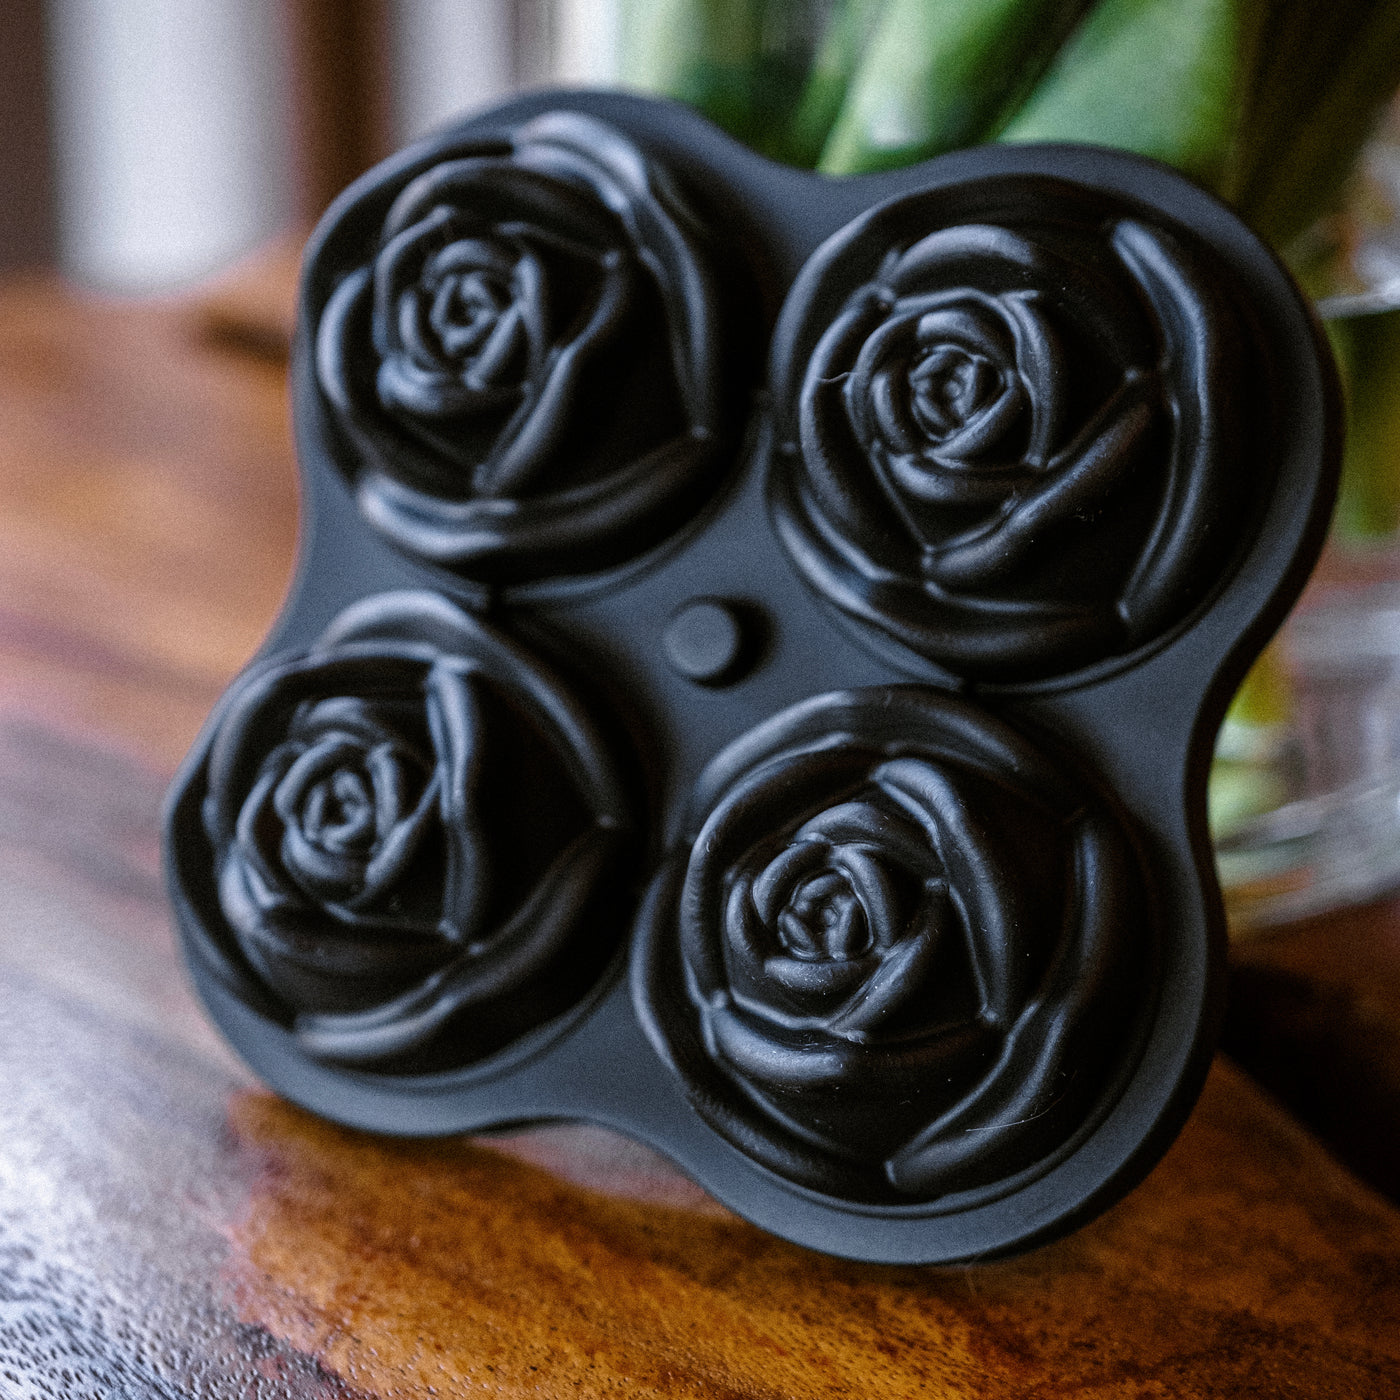 Coupes à cocktail & moule à glaçons Roses – Chez Marthe boutique